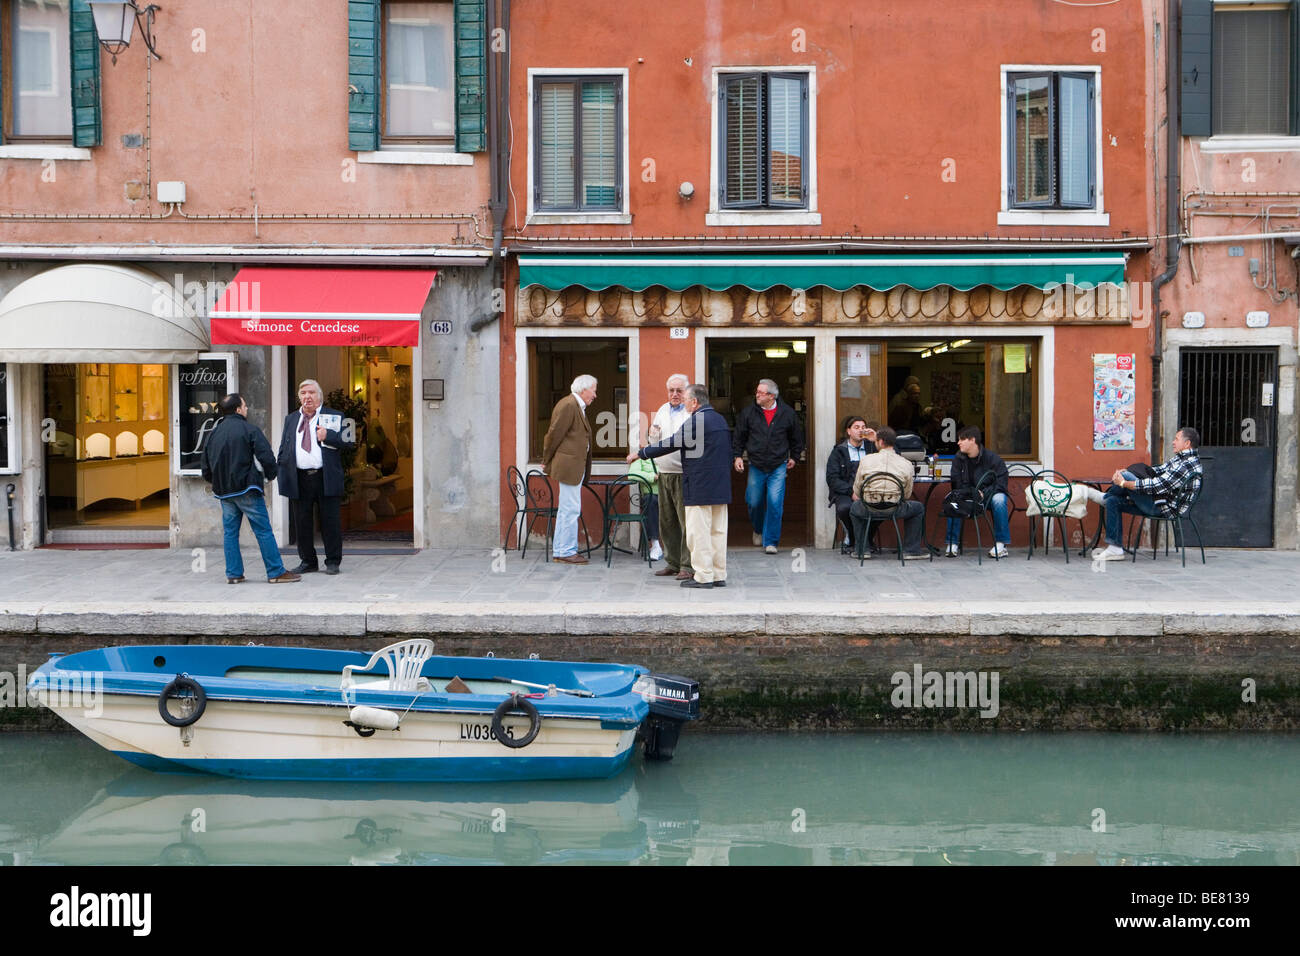 Les hommes en conversation en face d'un bar, scène de rue le long du Rio dei Vetrai Canal, Murano, Veneto, Italie Banque D'Images